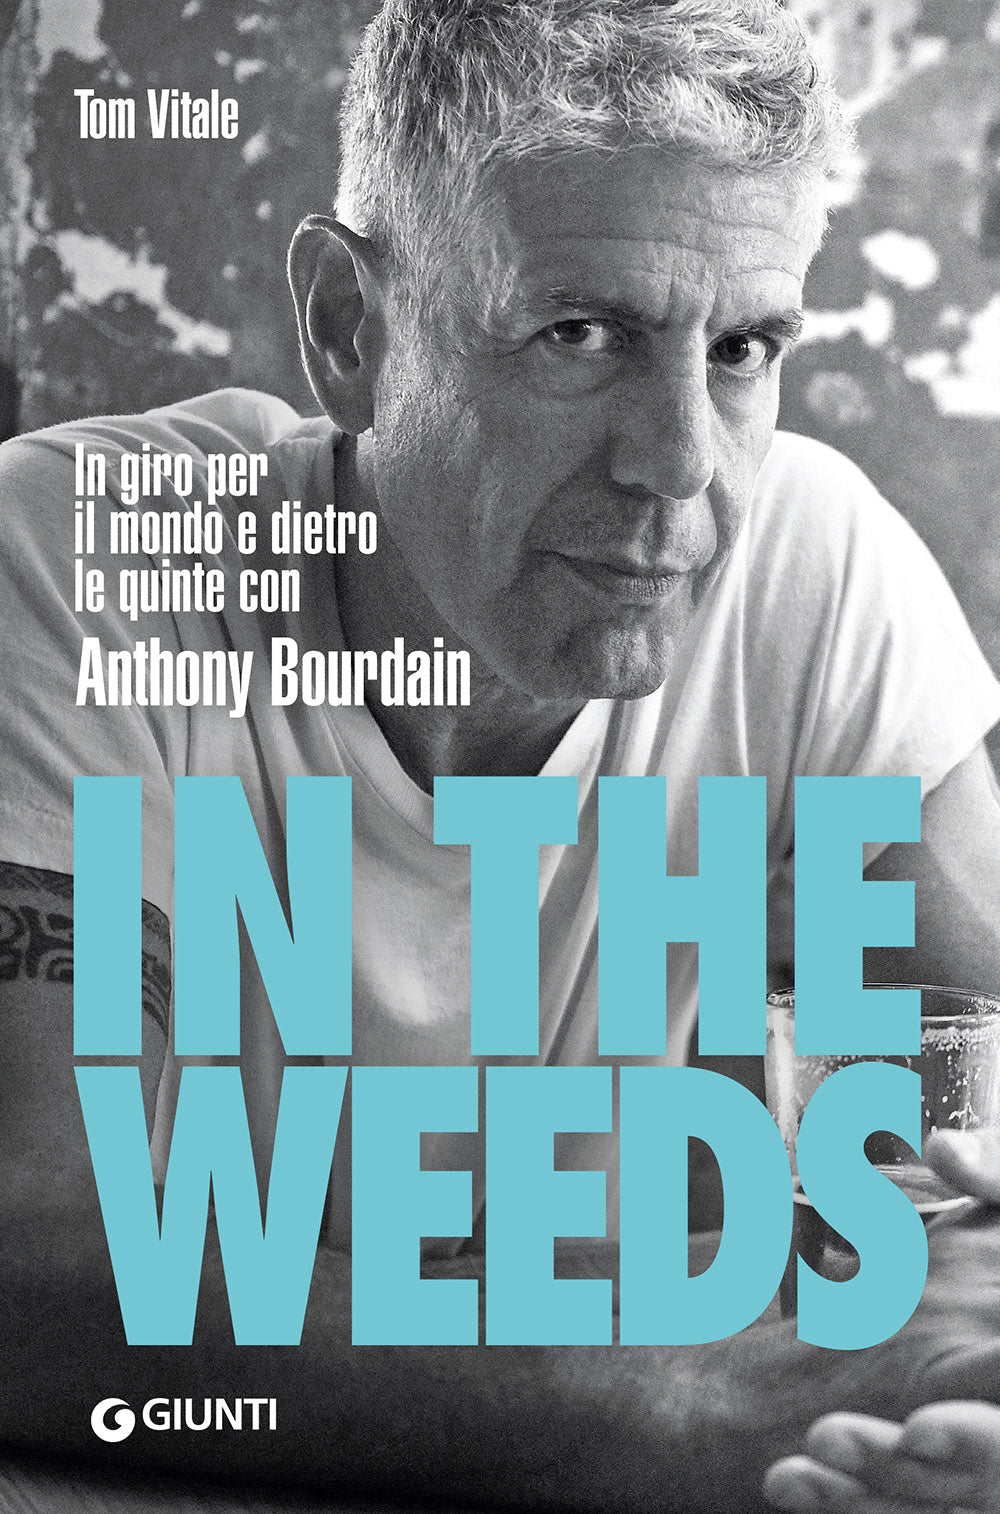 In the Weeds. In giro per il mondo e dietro le quinte con Anthony Bourdain